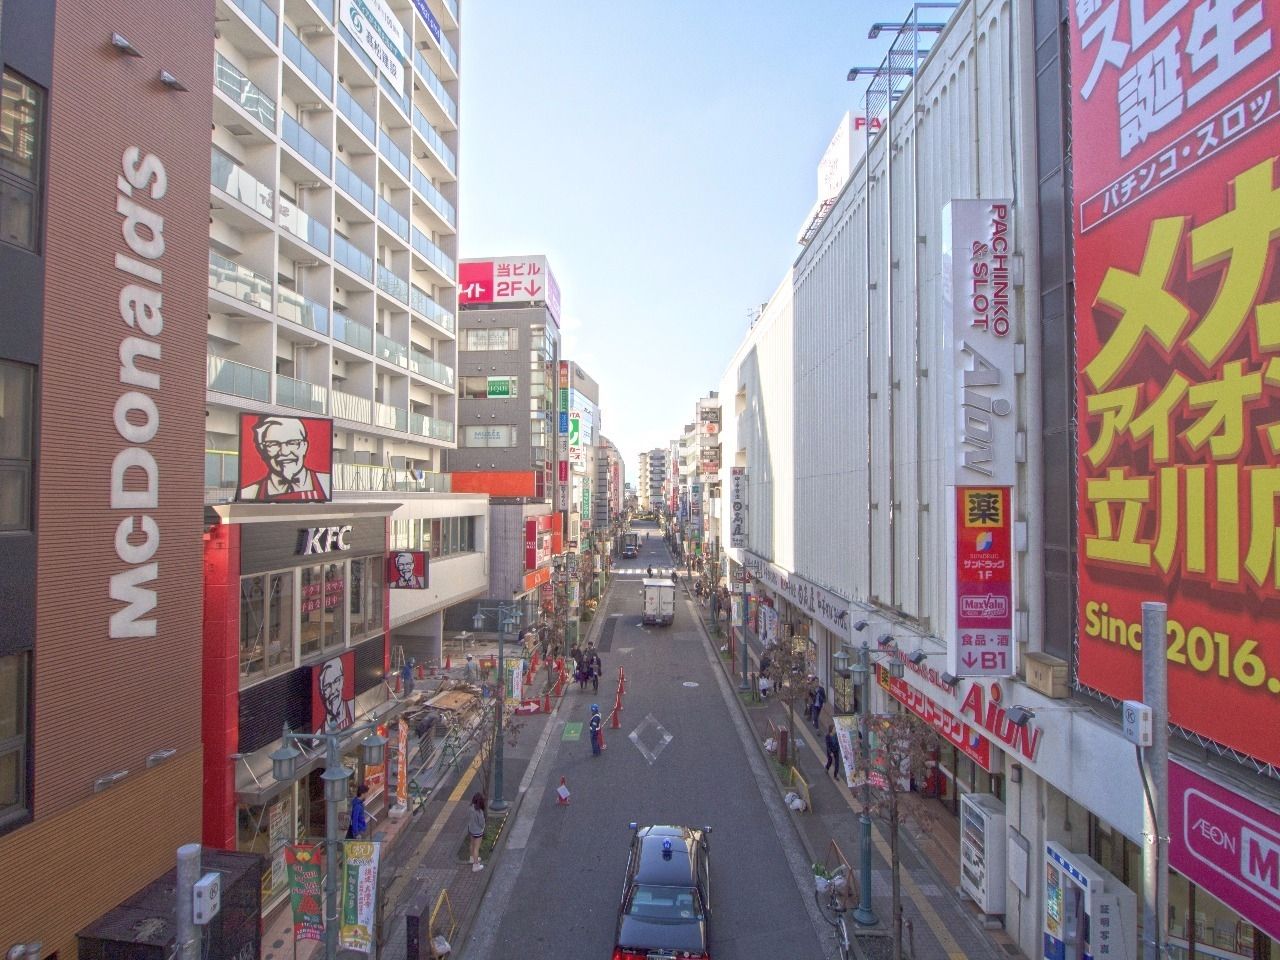 立川駅南口前に広がる商店街はお買い物に便利なお店多数あり